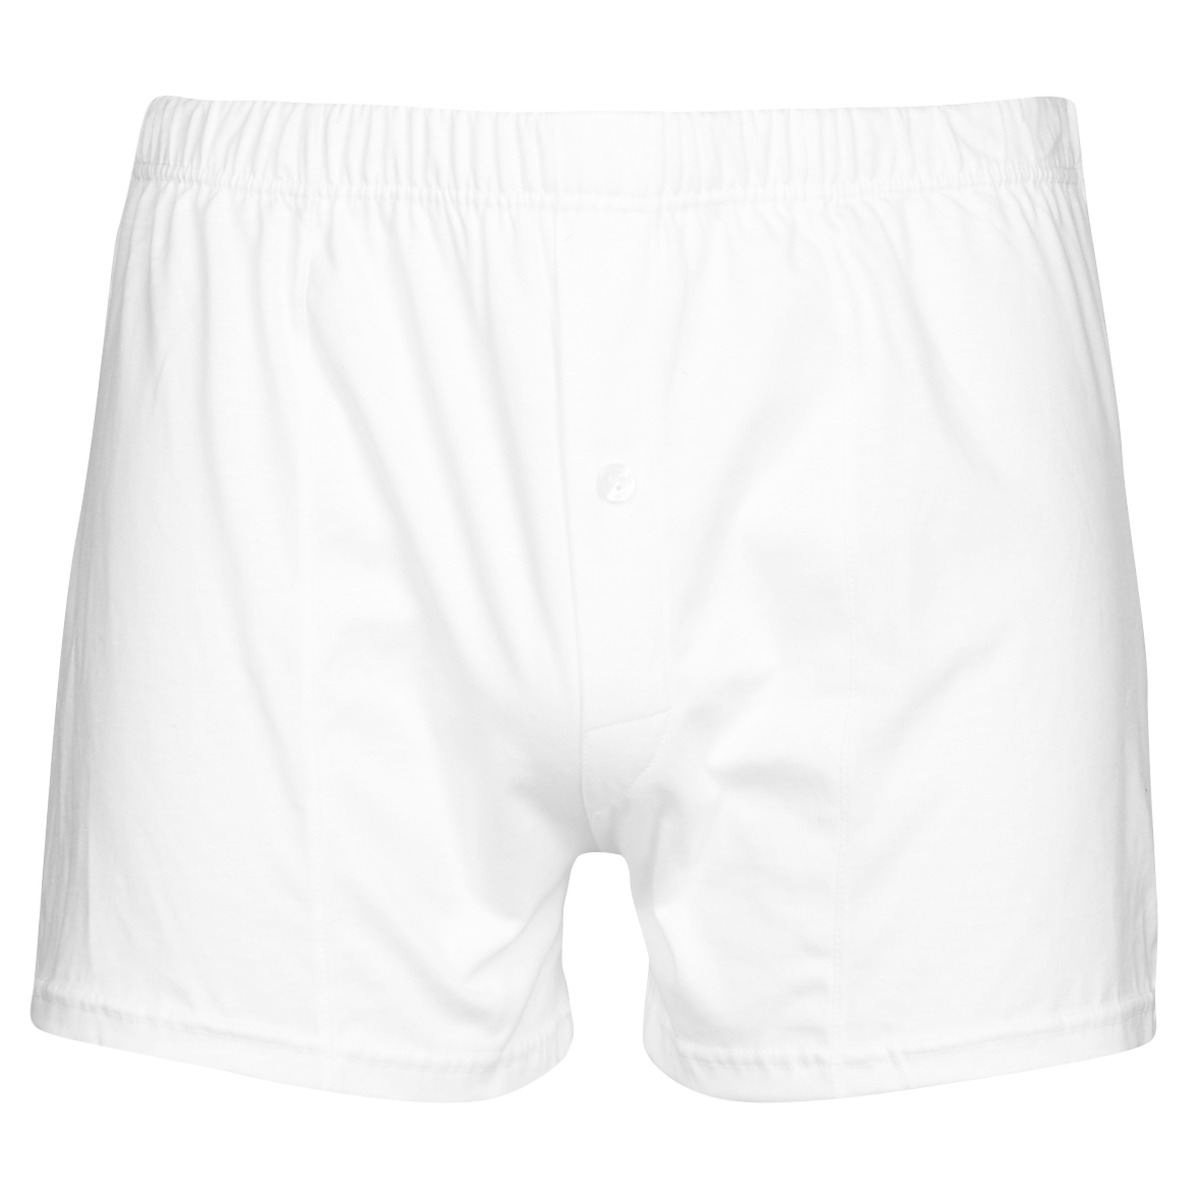 Para Hombre Blanco Paquete de 2 Boxer Shorts Underwear LONSDALE S M L XL XXL 3XL 4XL 